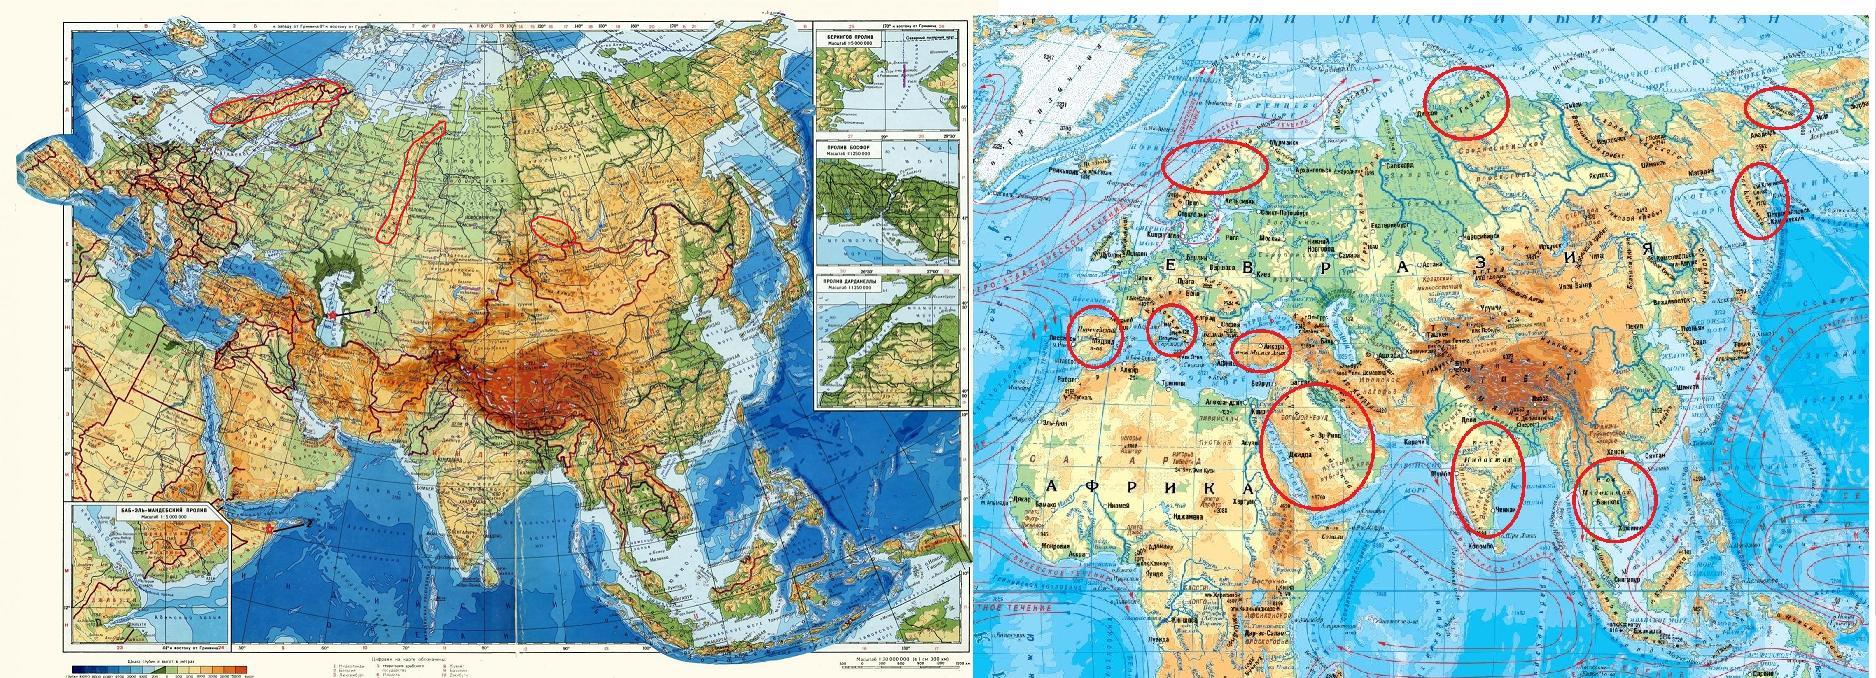 Евразия омывается водами 4 океанов. Евразия занимает. Граница Европы и Азии на карте Евразии. Какре место занимает Евразия по площади. Объединенная Евразия.